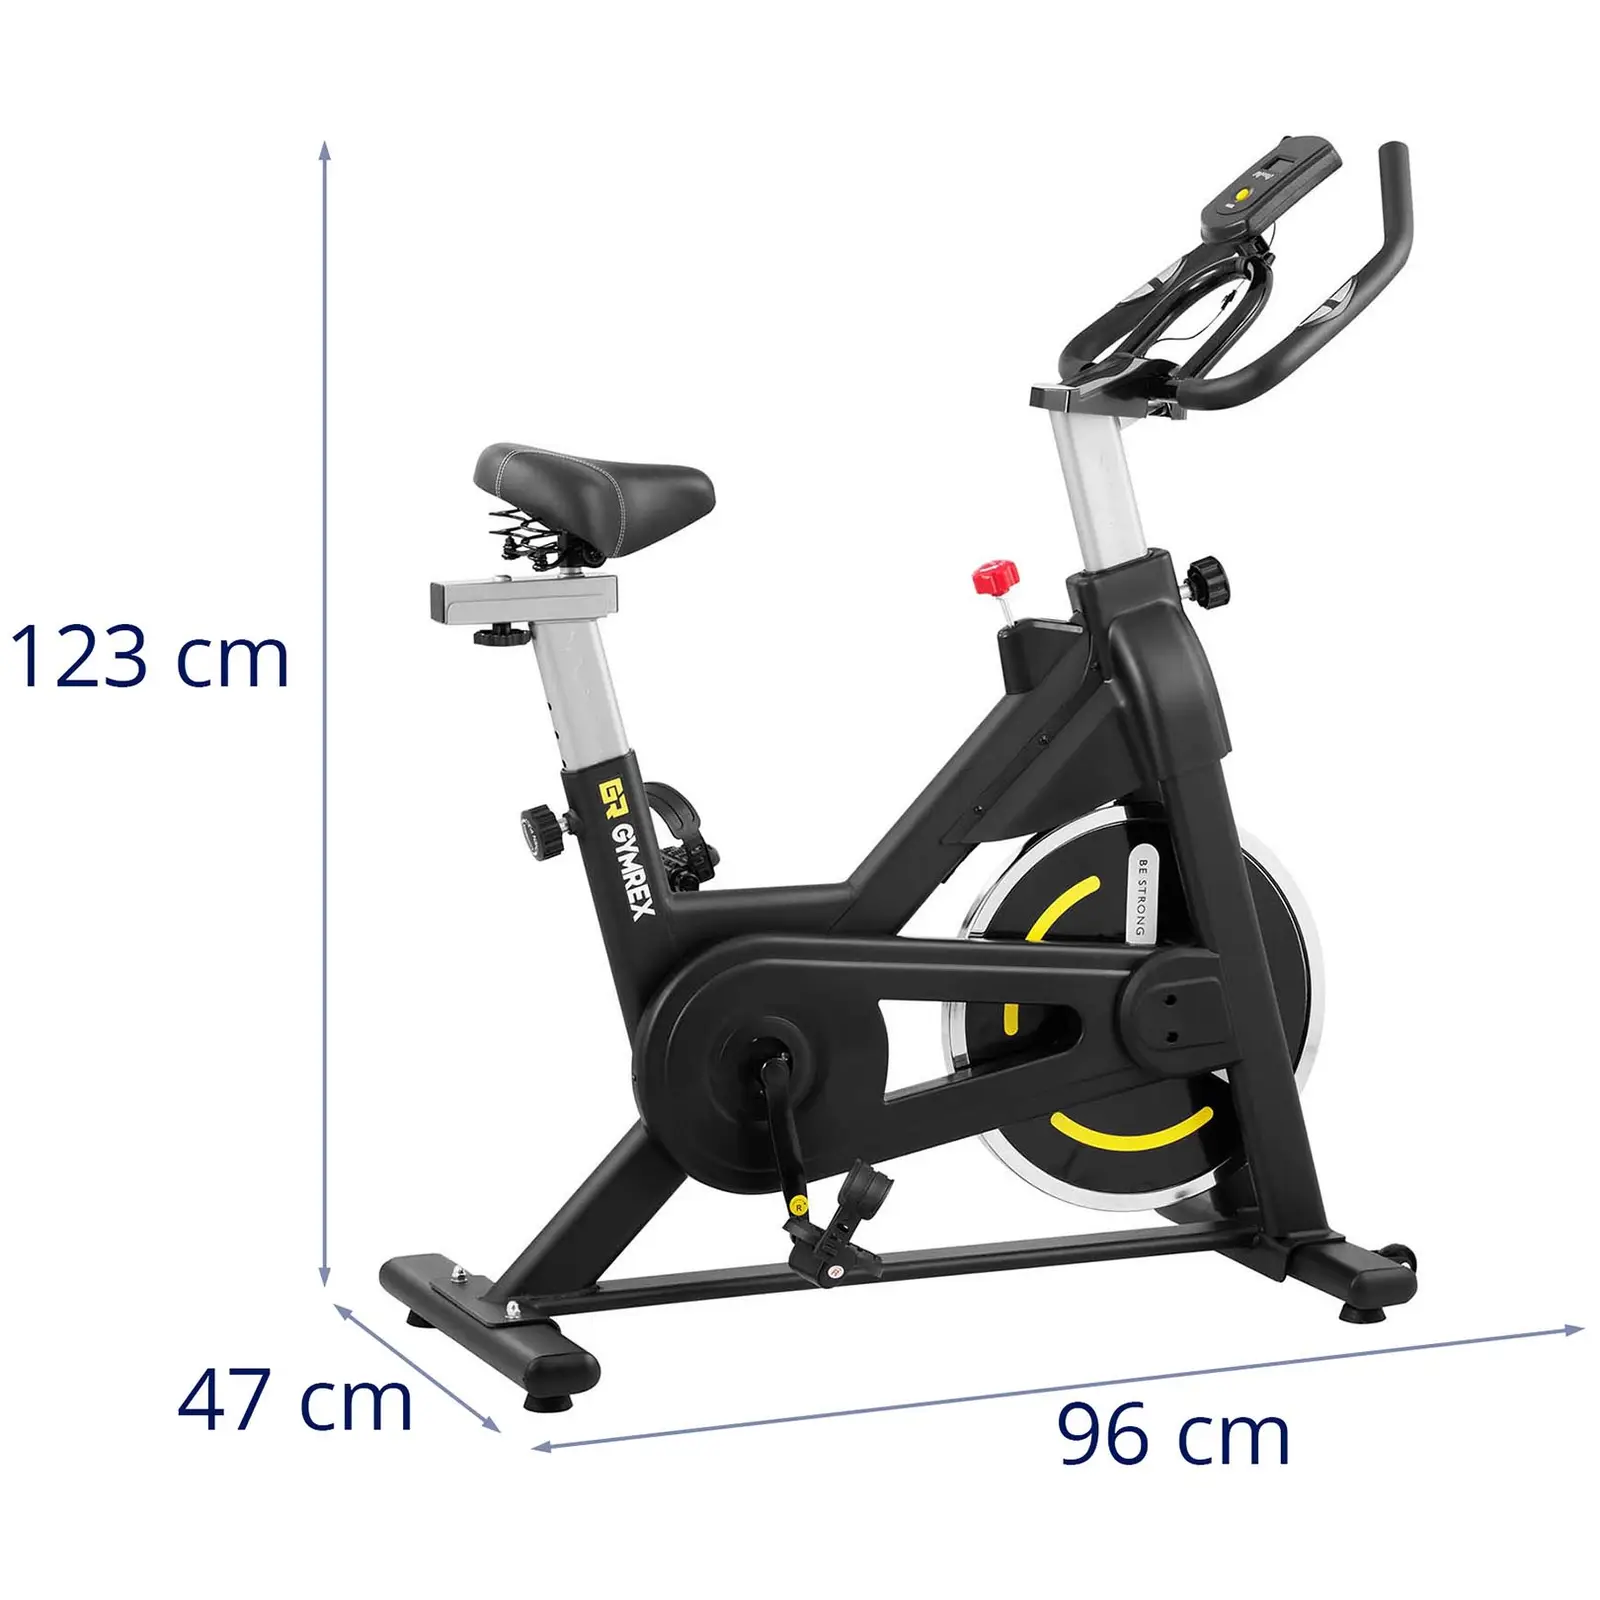 Motionscykel - pedalbelastning 8 kg - LCD